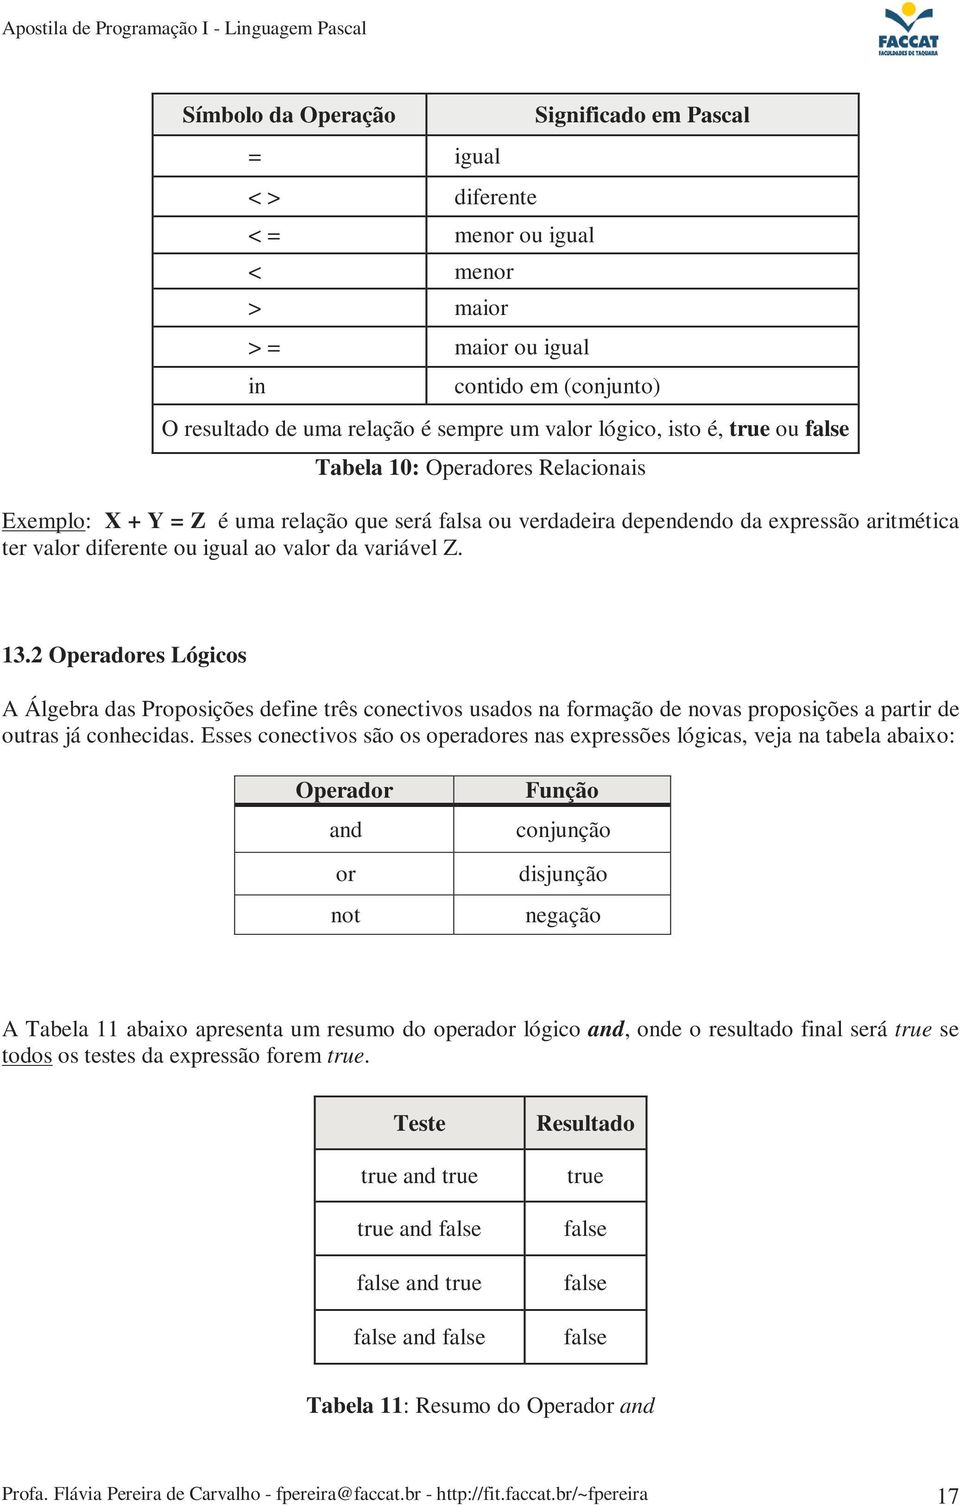 variável Z. 13.2 Operadores Lógicos A Álgebra das Proposições define três conectivos usados na formação de novas proposições a partir de outras já conhecidas.